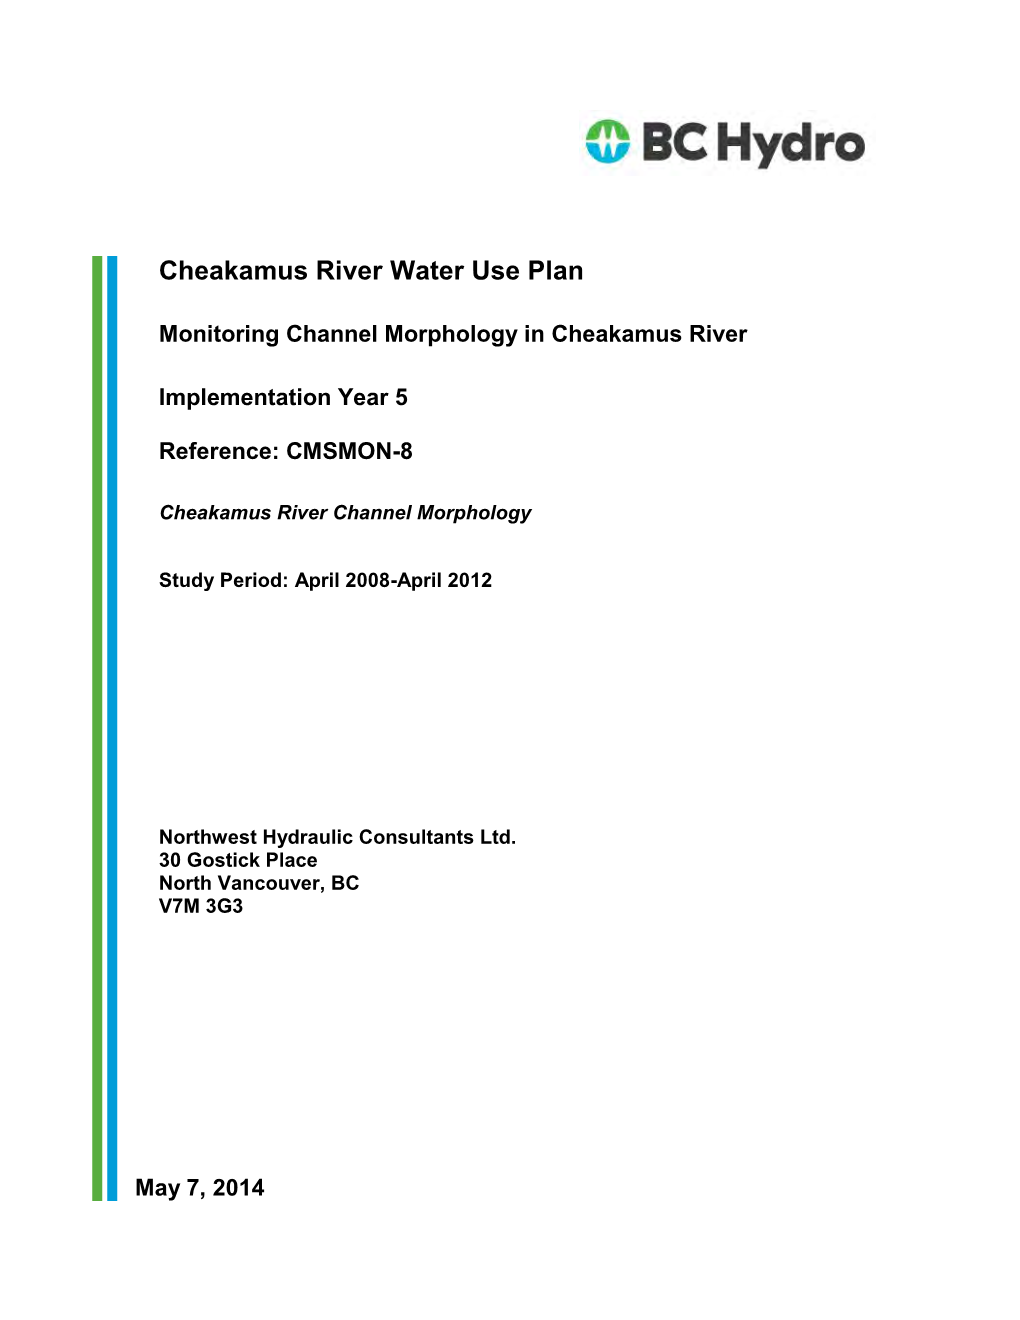 CMSMON-8 | Monitoring Channel Morphology in Cheakamus River